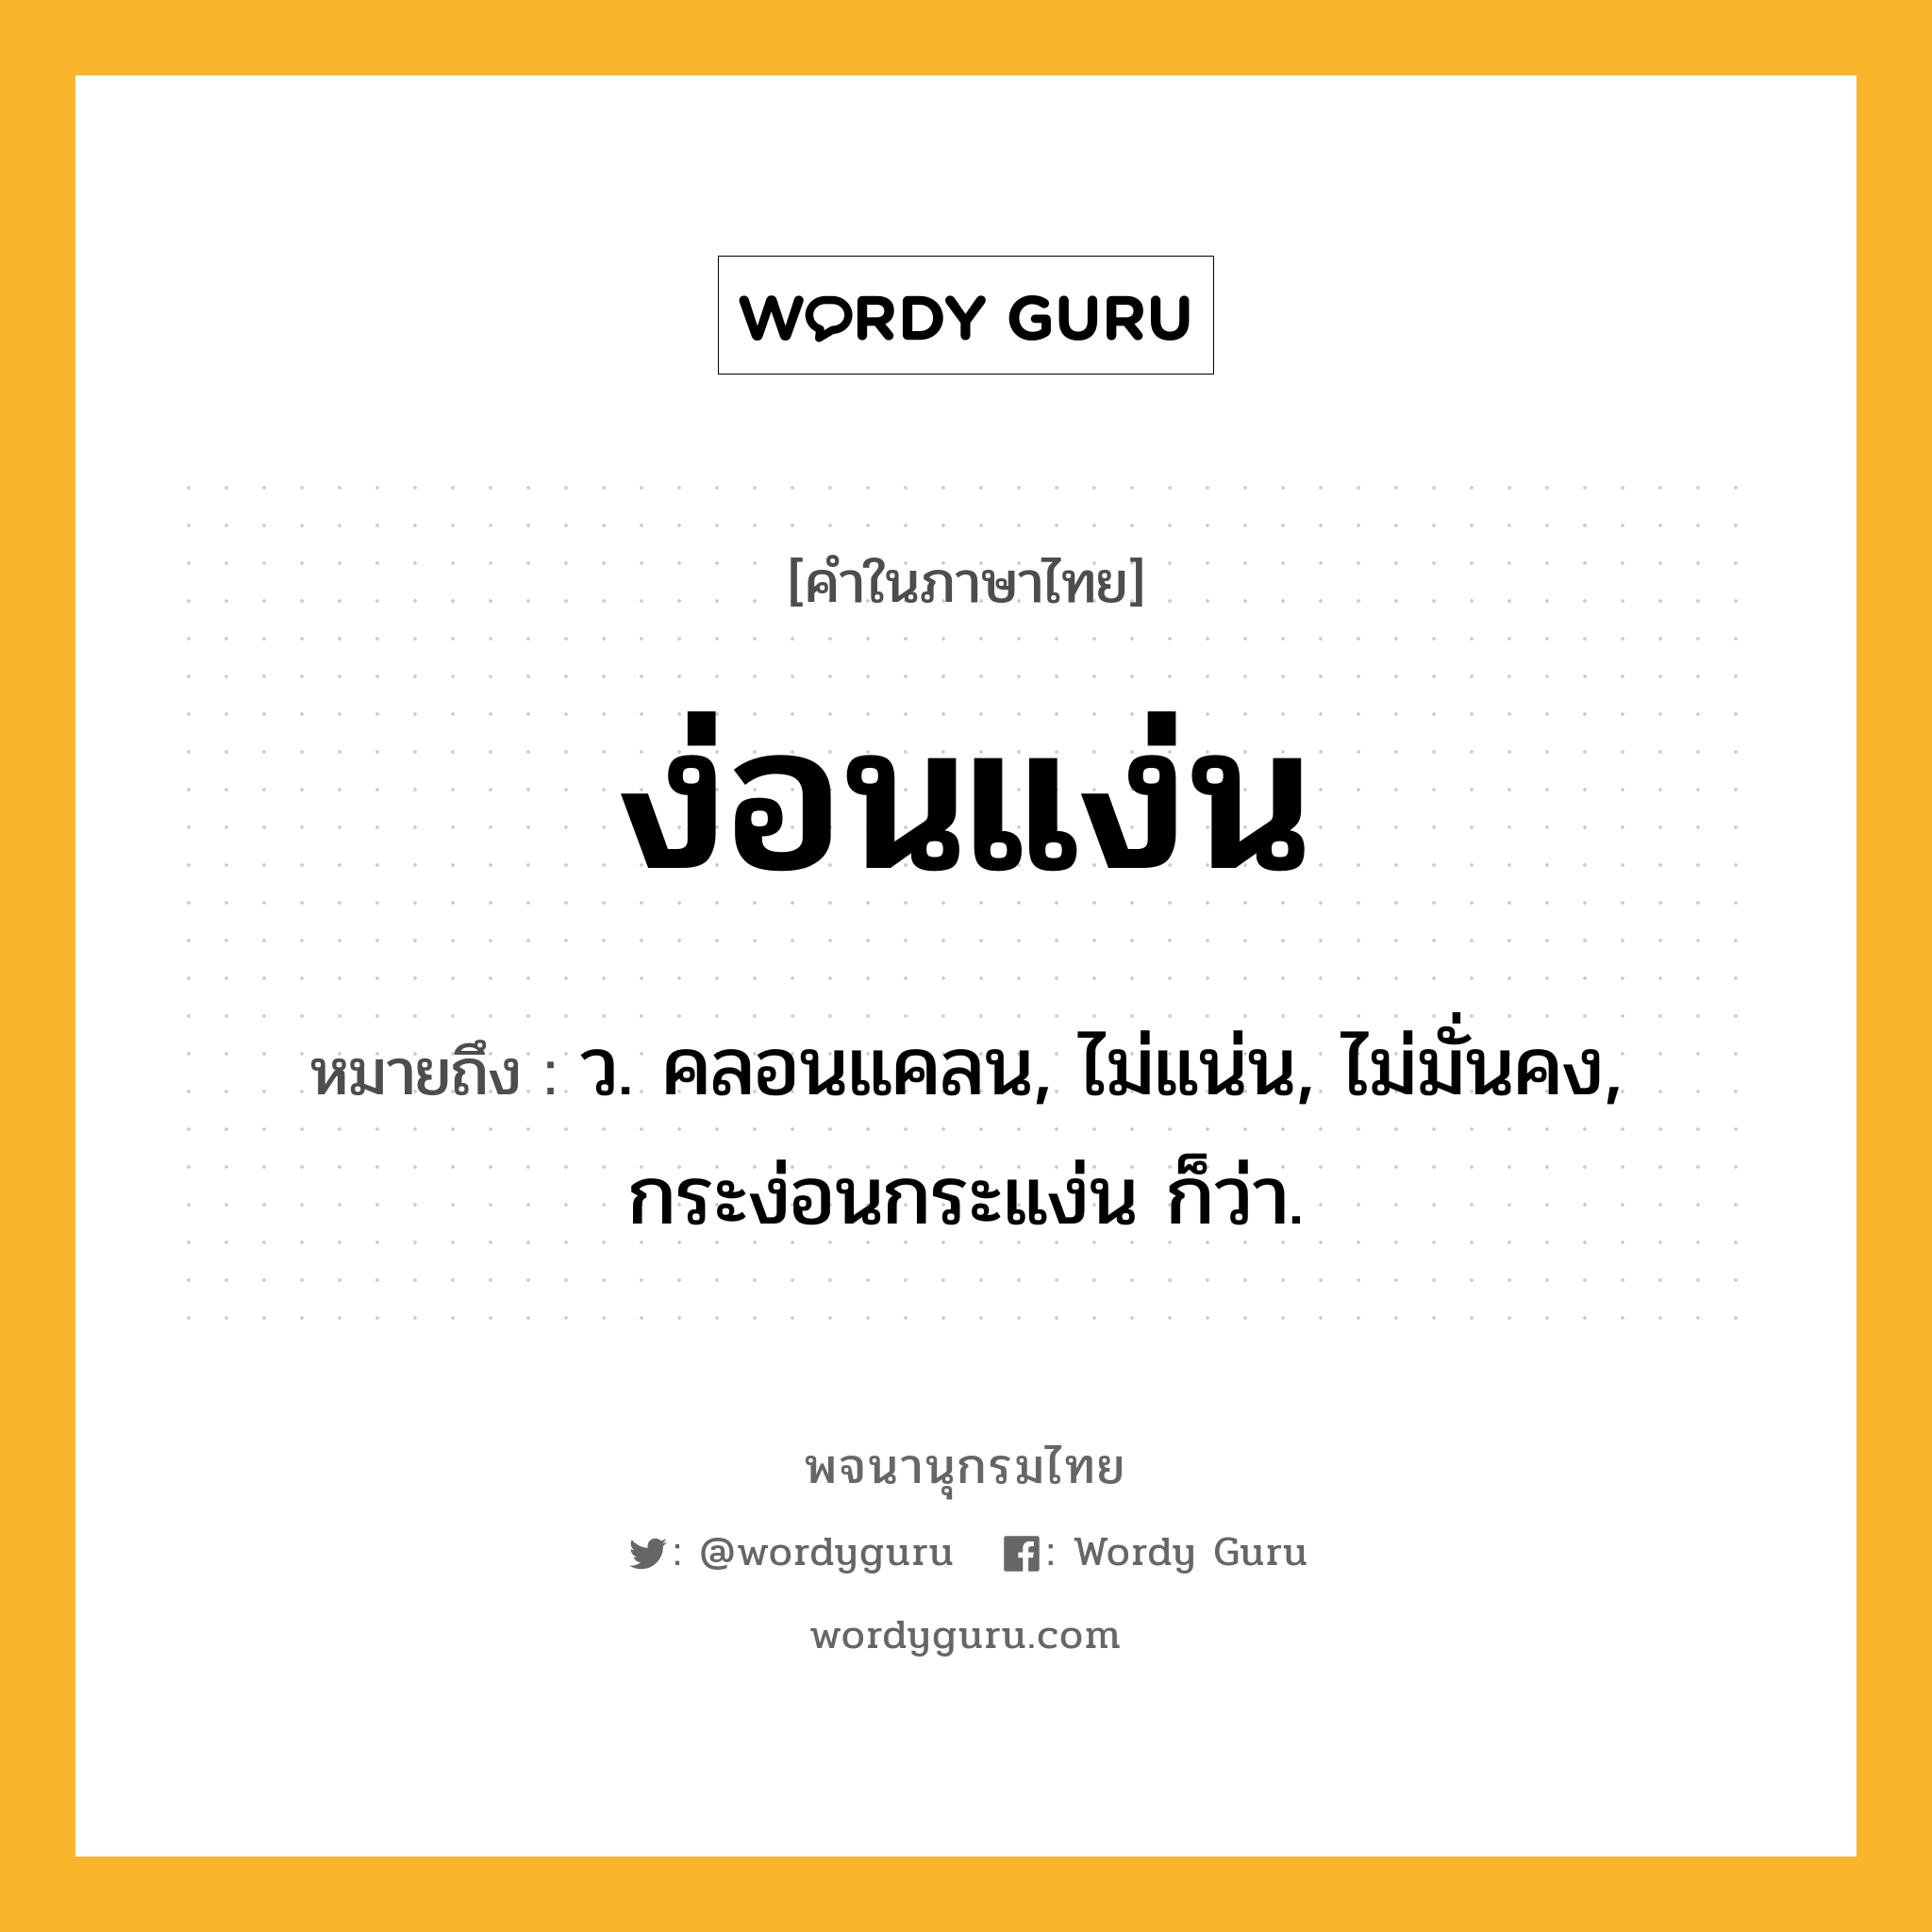 ง่อนแง่น หมายถึงอะไร?, คำในภาษาไทย ง่อนแง่น หมายถึง ว. คลอนแคลน, ไม่แน่น, ไม่มั่นคง, กระง่อนกระแง่น ก็ว่า.